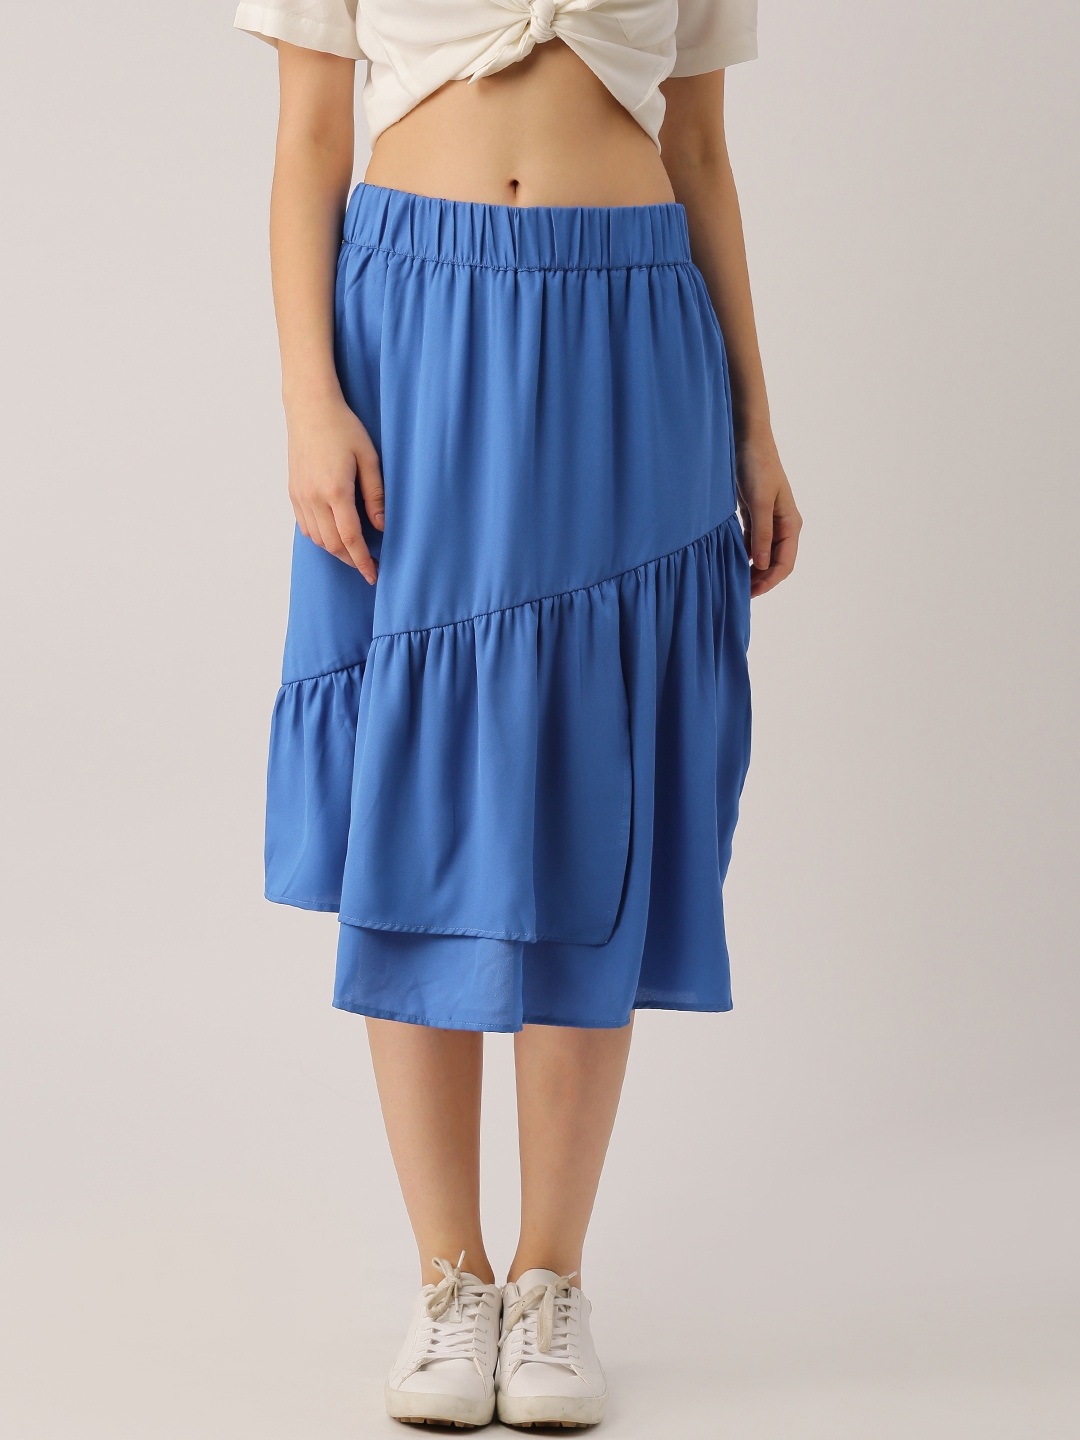 Buy DressBerry Blue Flared Skirt - Skirts for Women 1814766 | Myntra